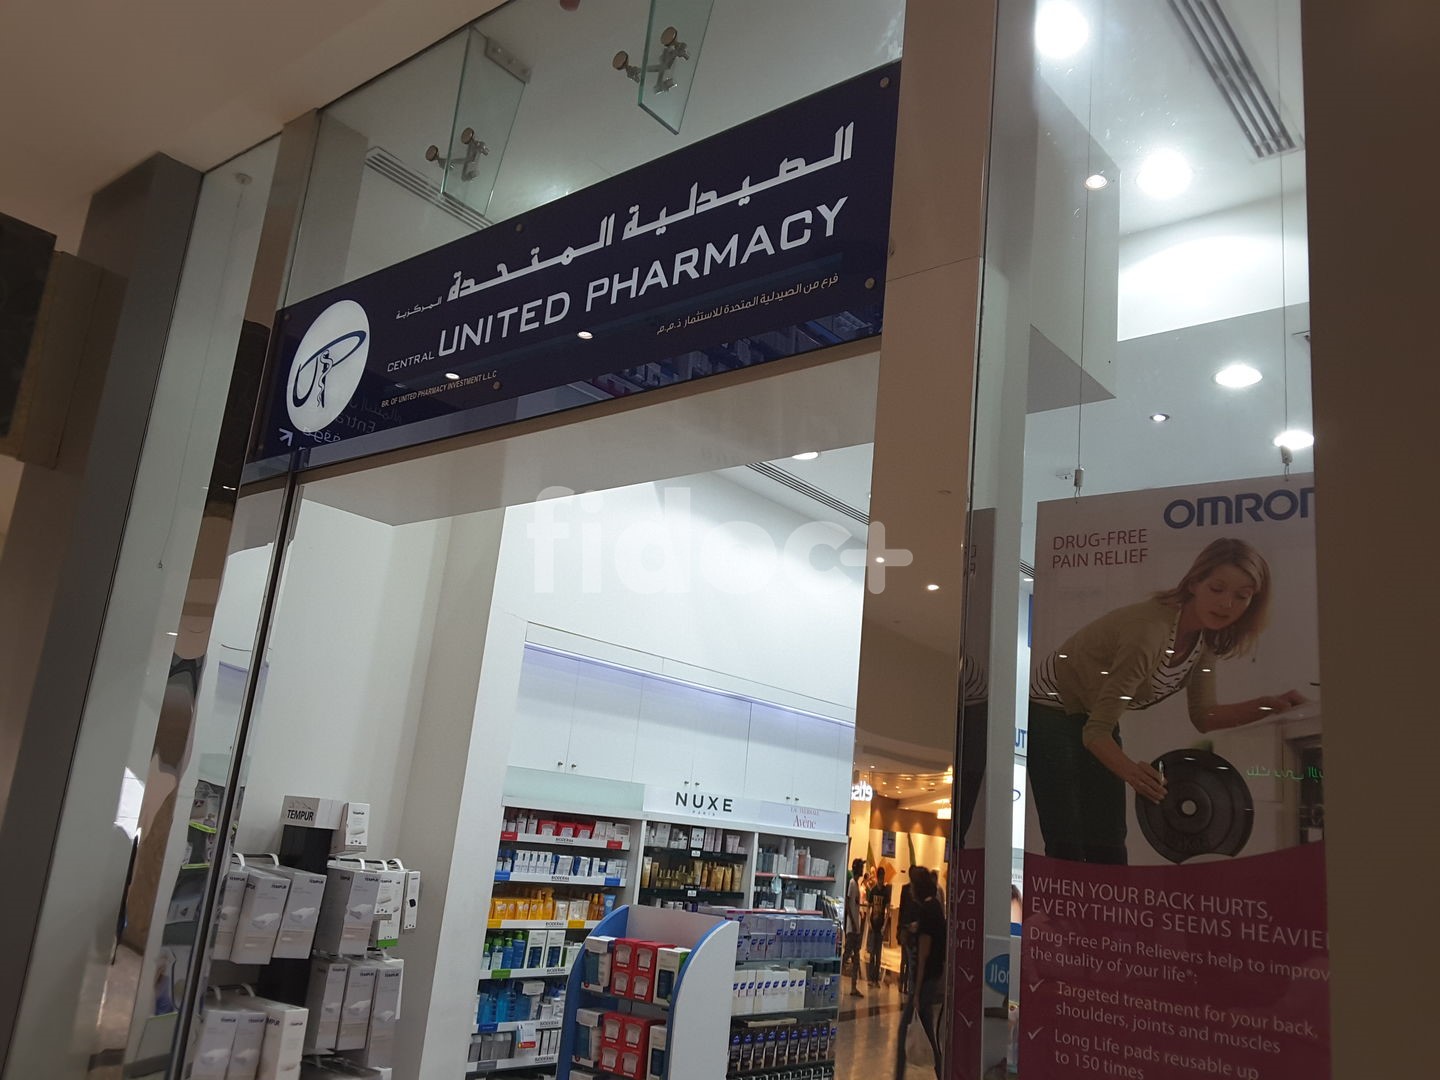 Central United Pharmacy, Dubai